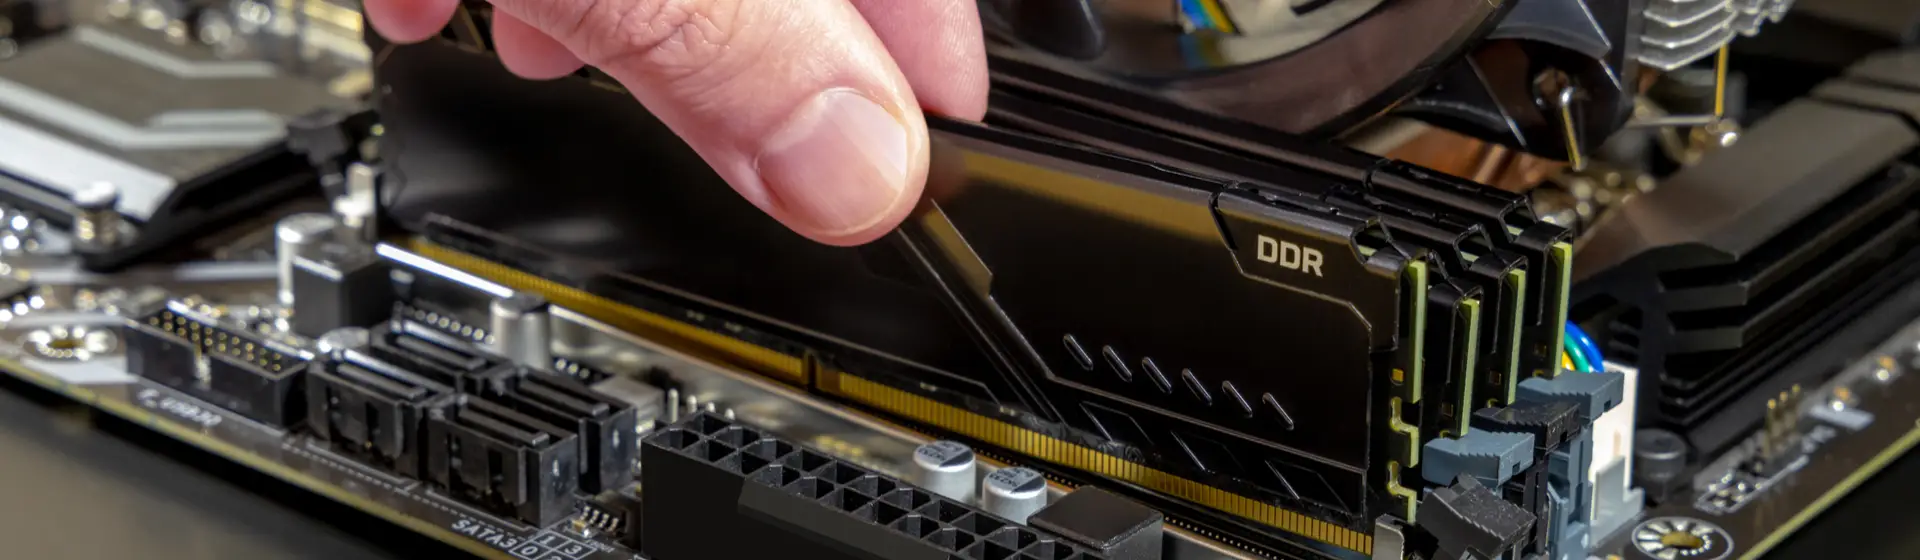 Placa-mãe DDR4: os 9 melhores modelos para comprar